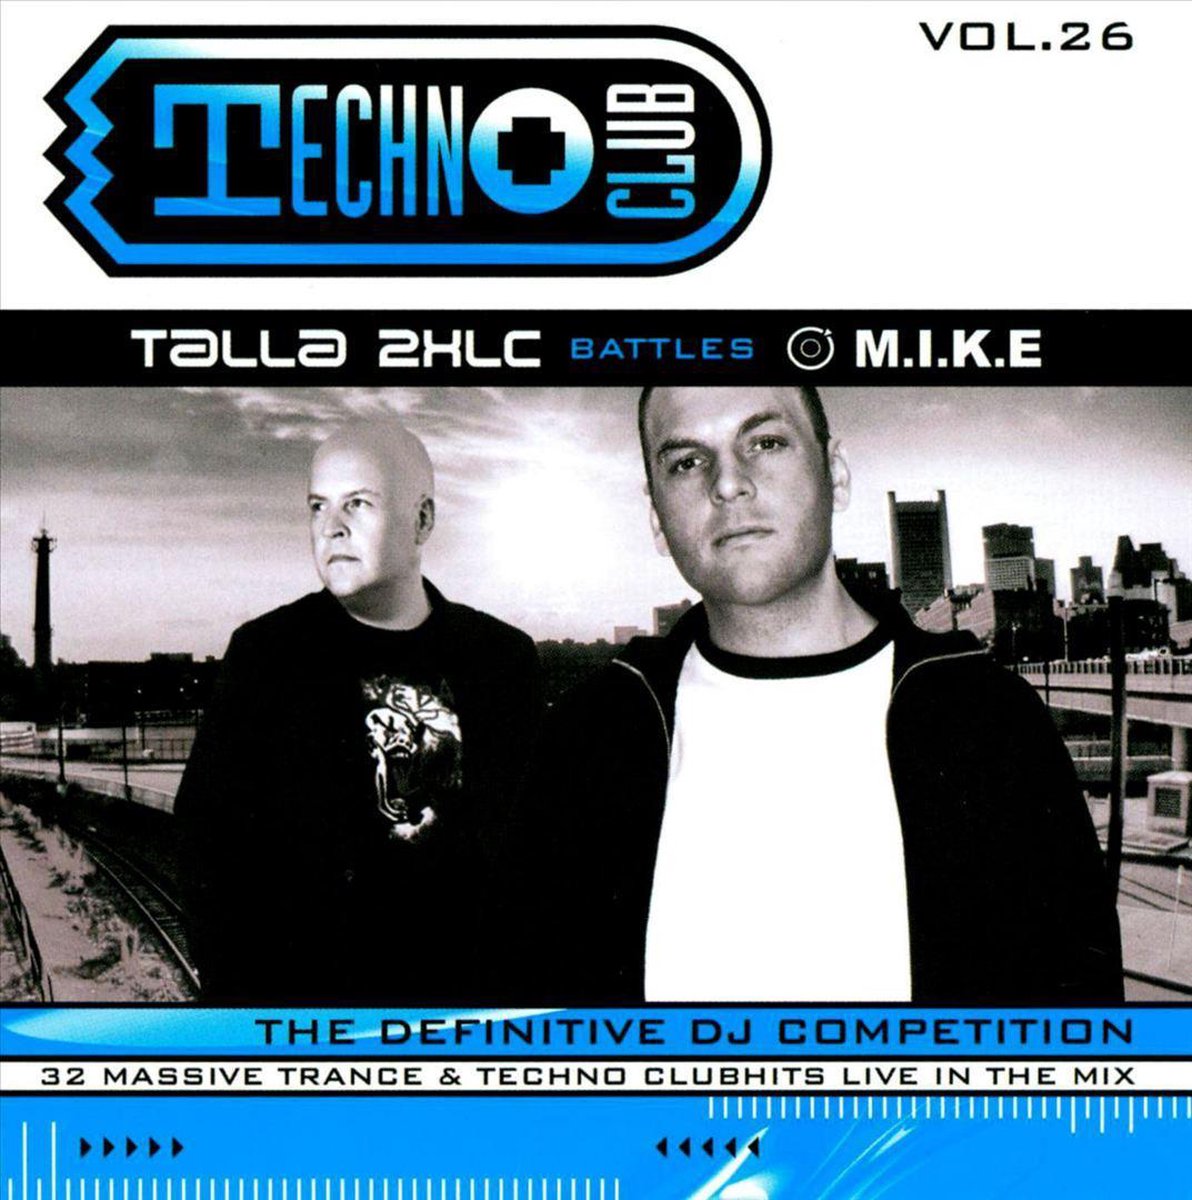 Techno + Club, Vol. 26: The Definitive DJ Competition - Talla 2Xlc